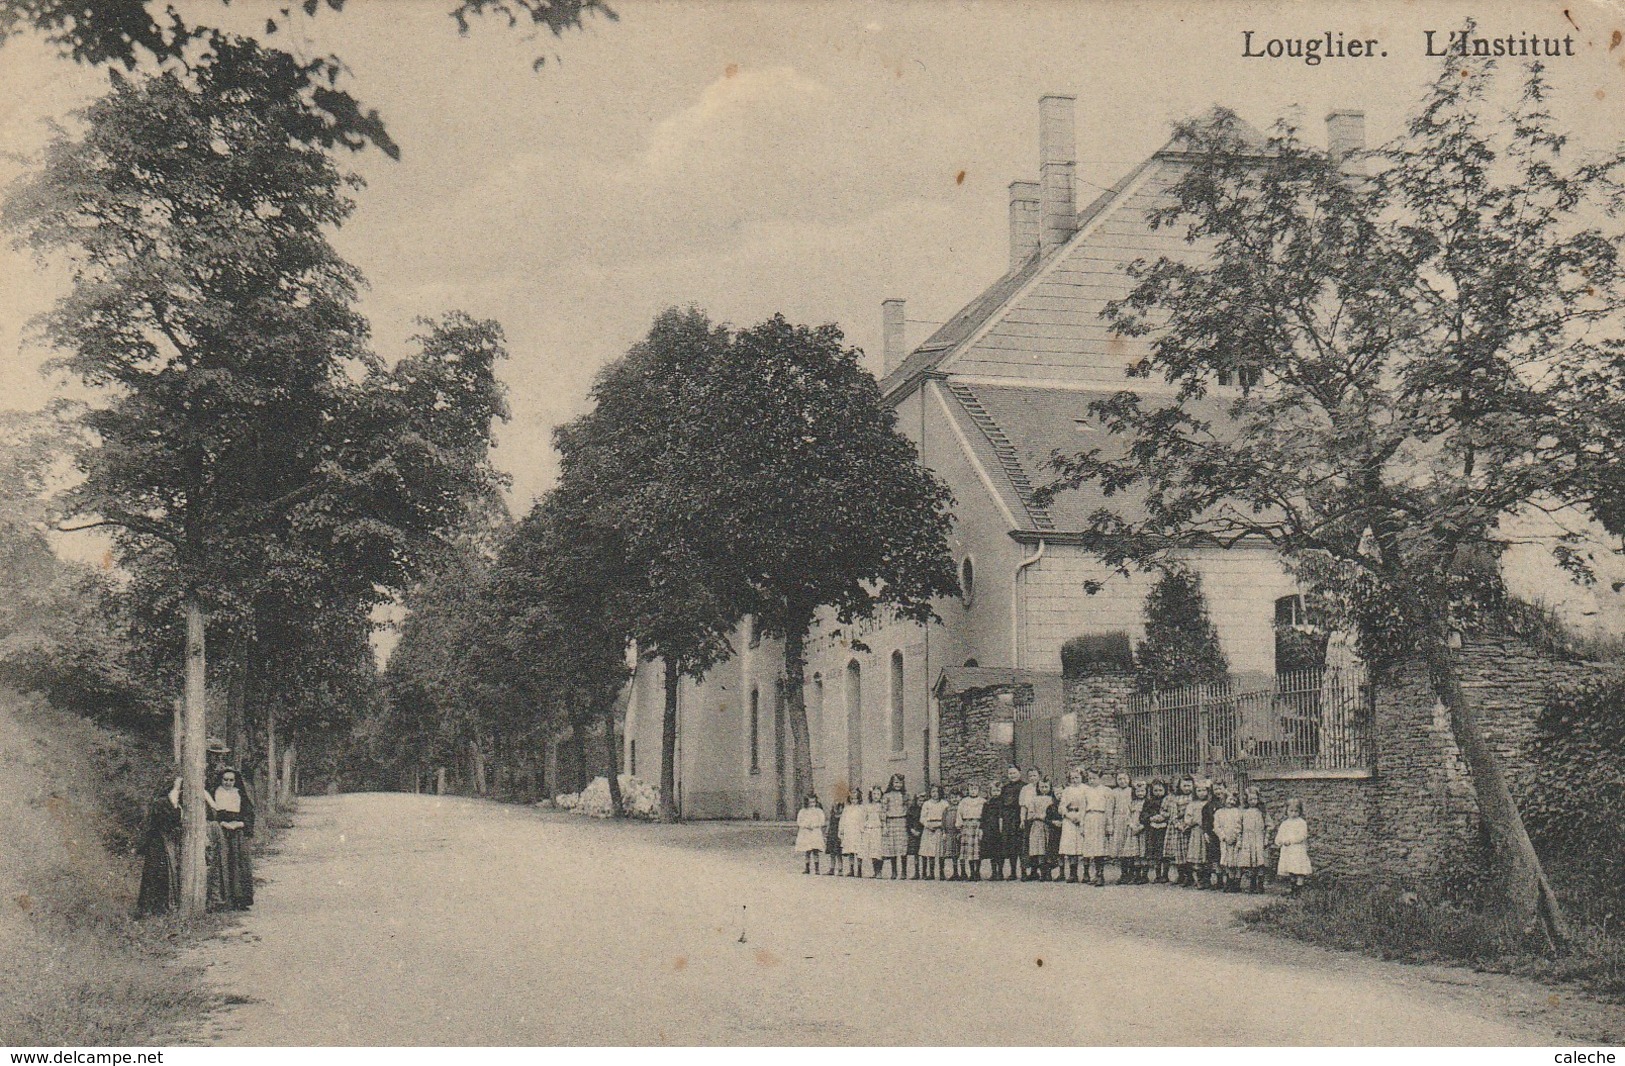 LONGLIER - L'institut - Rect Oblitération Relais Longlier - Vers Nivelles(rue De Namur) - Neufchâteau